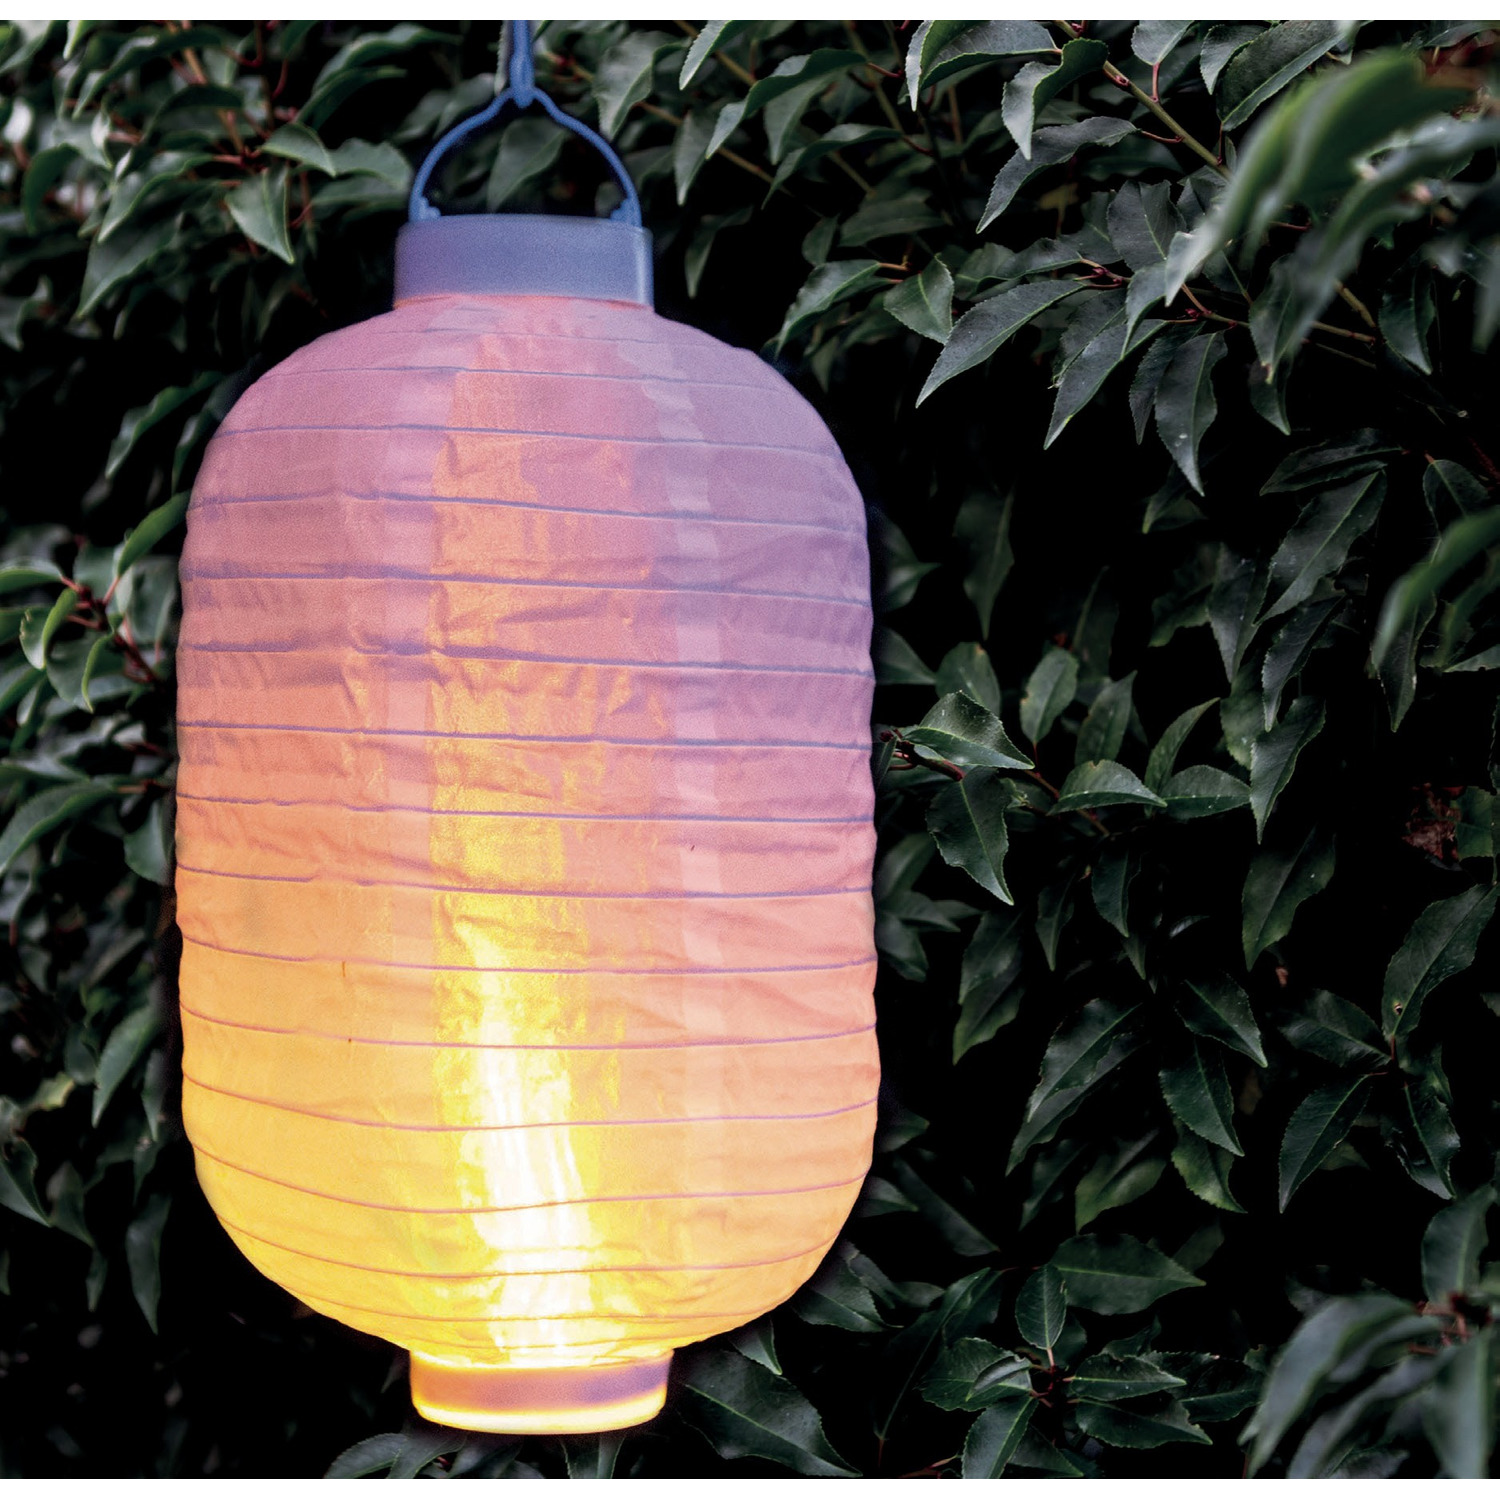 6x stuks luxe solar lampion/lampionnen wit met realistisch vlameffect 20 x 30 cm